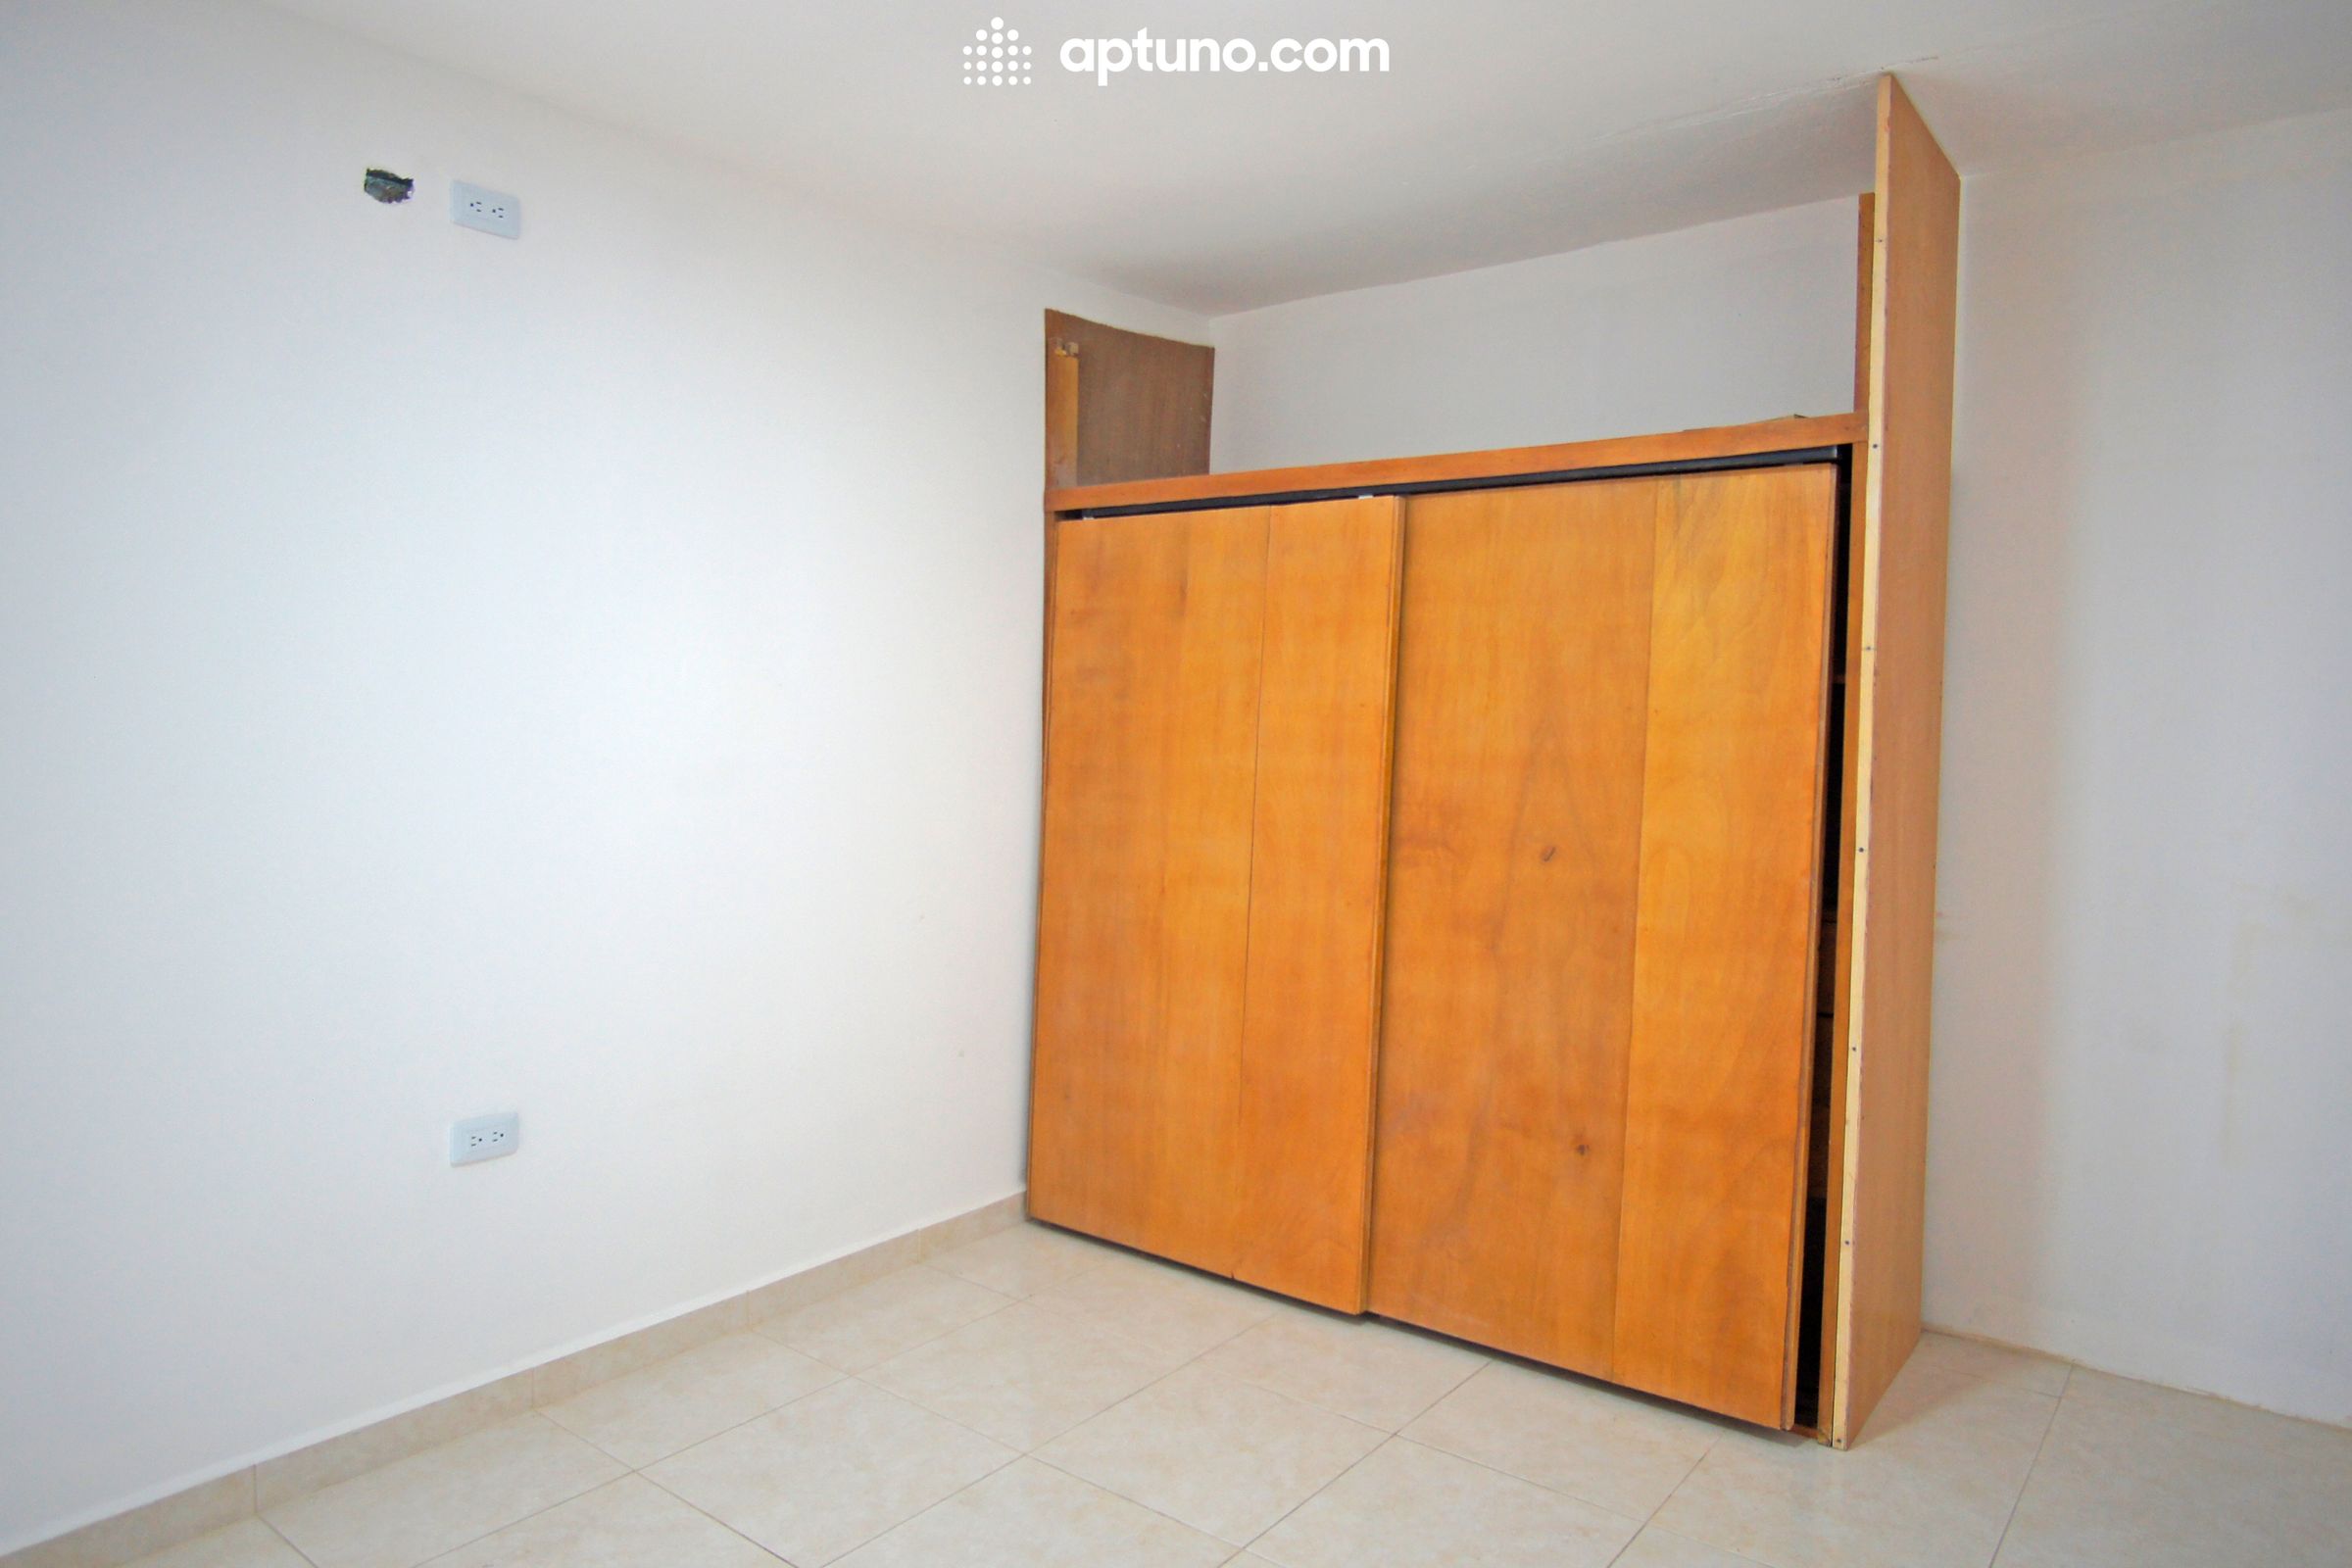 Apartamento en arriendo Colombia 50 m² - $ 1.500.000,00